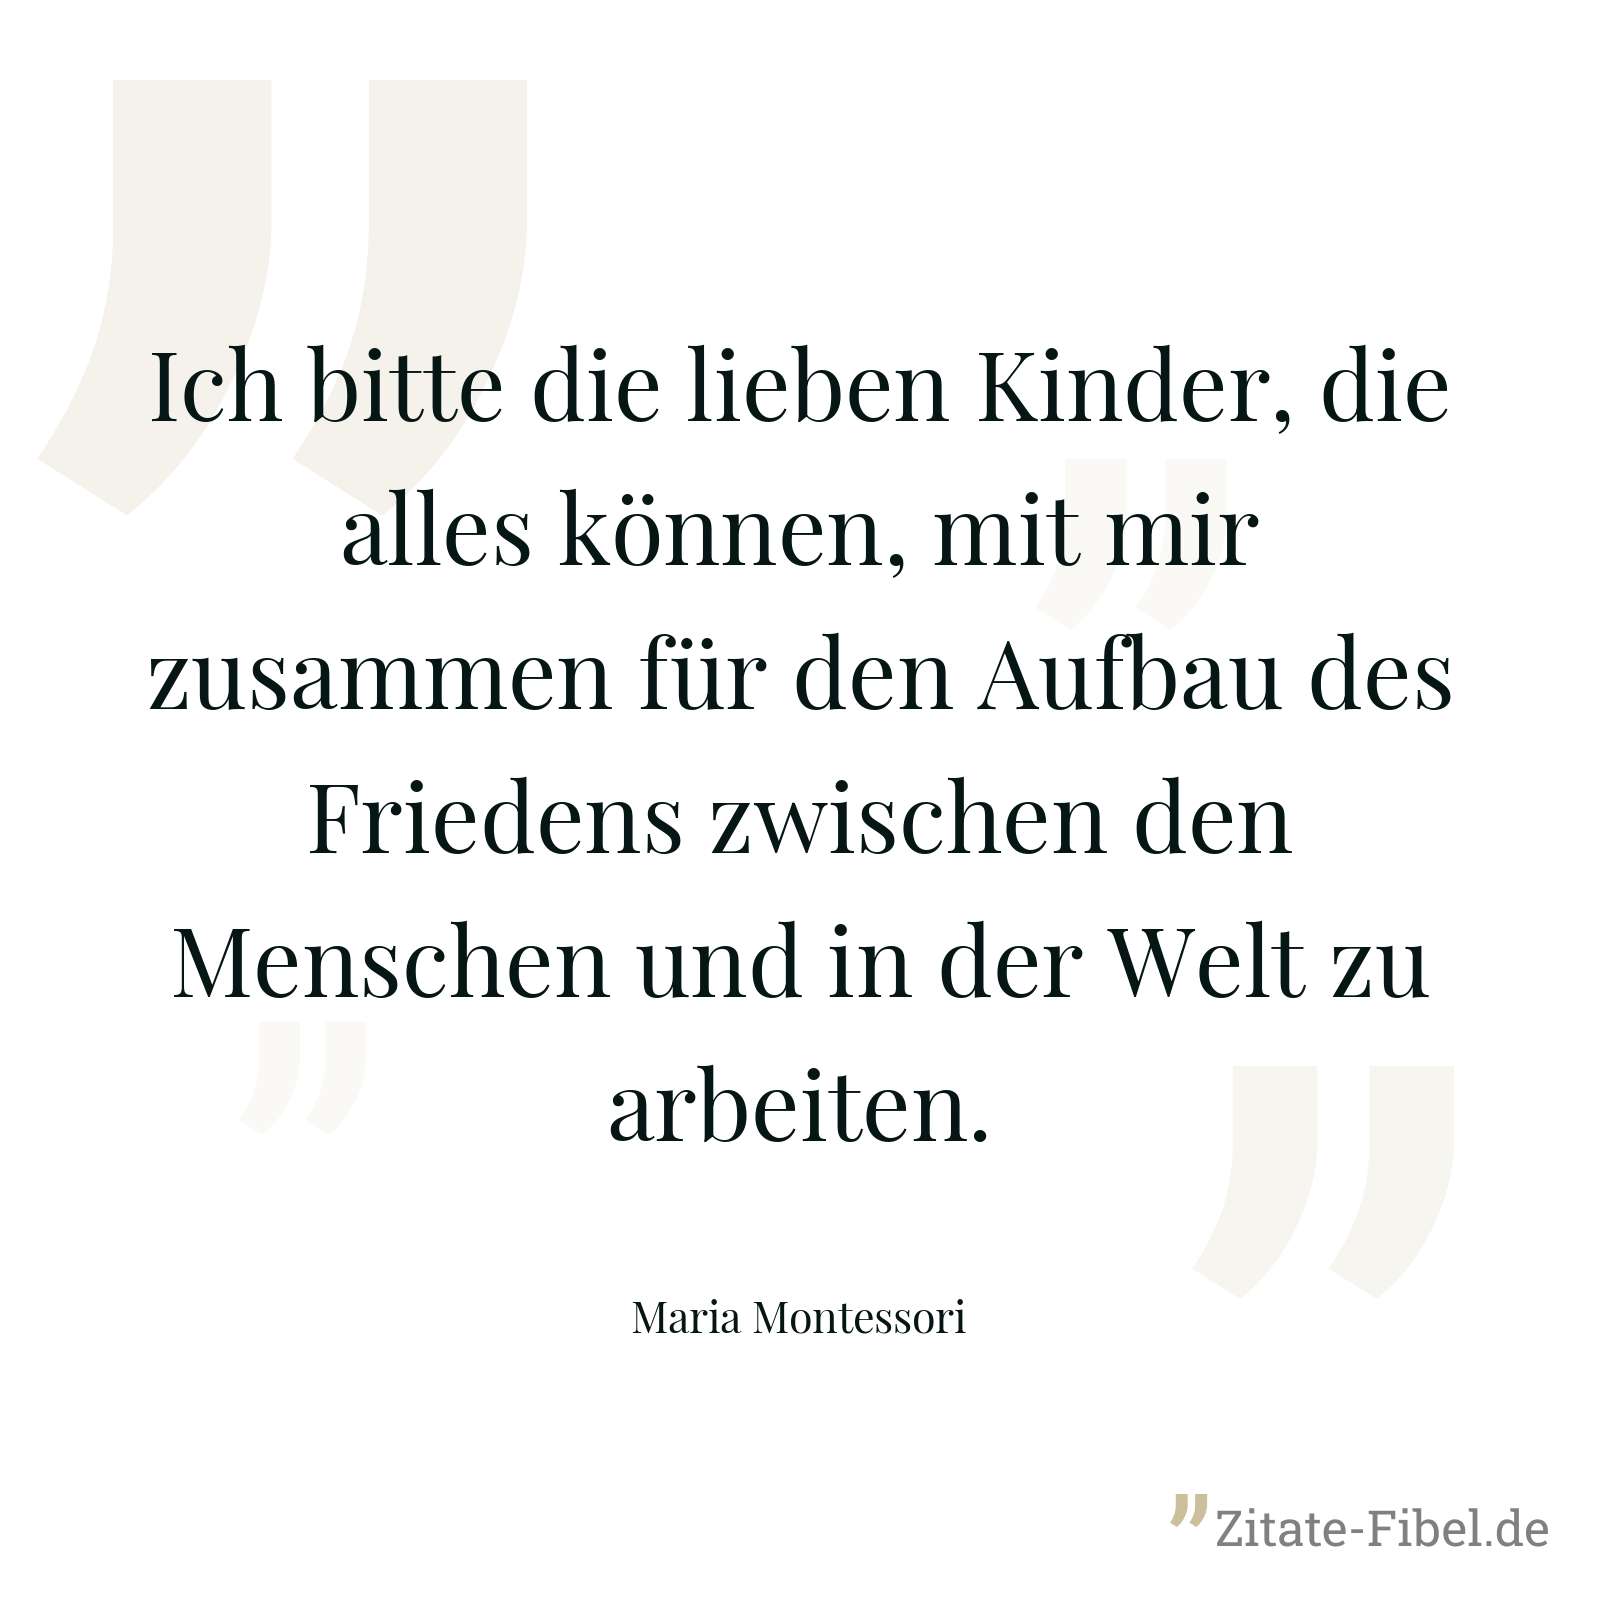 Ich bitte die lieben Kinder, die alles können, mit mir zusammen für den Aufbau des Friedens zwischen den Menschen und in der Welt zu arbeiten. - Maria Montessori